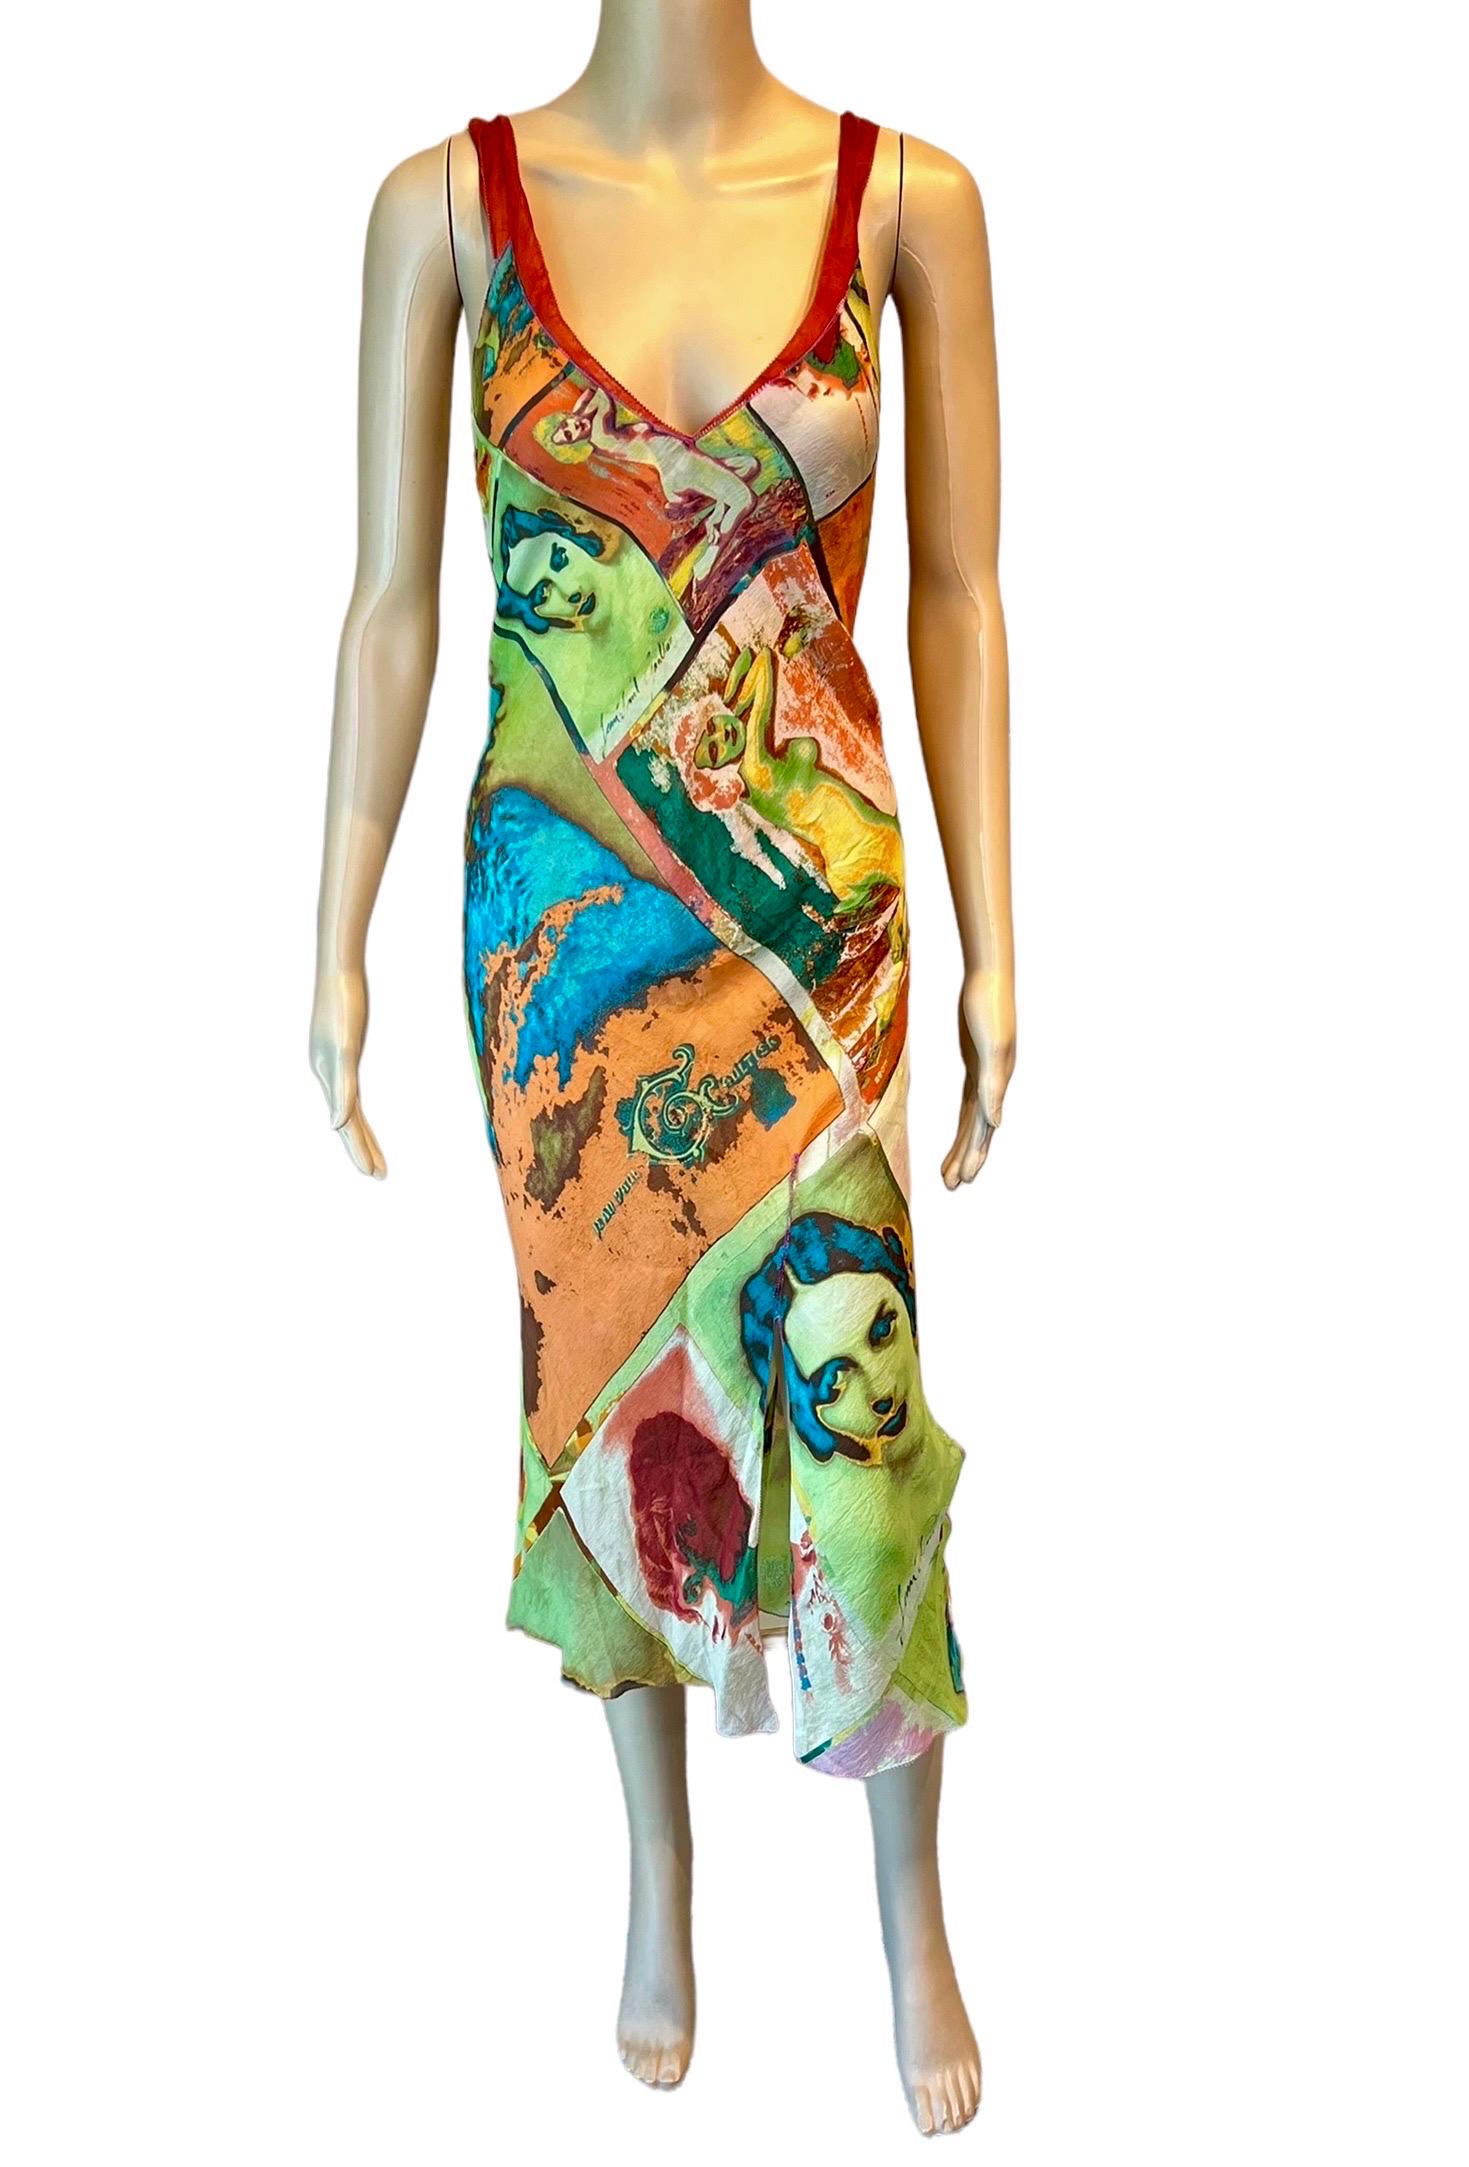 Beige Jean Paul Gaultier S/S 2002 Vintage “Portraits” Faces People Print Slip Dress  For Sale